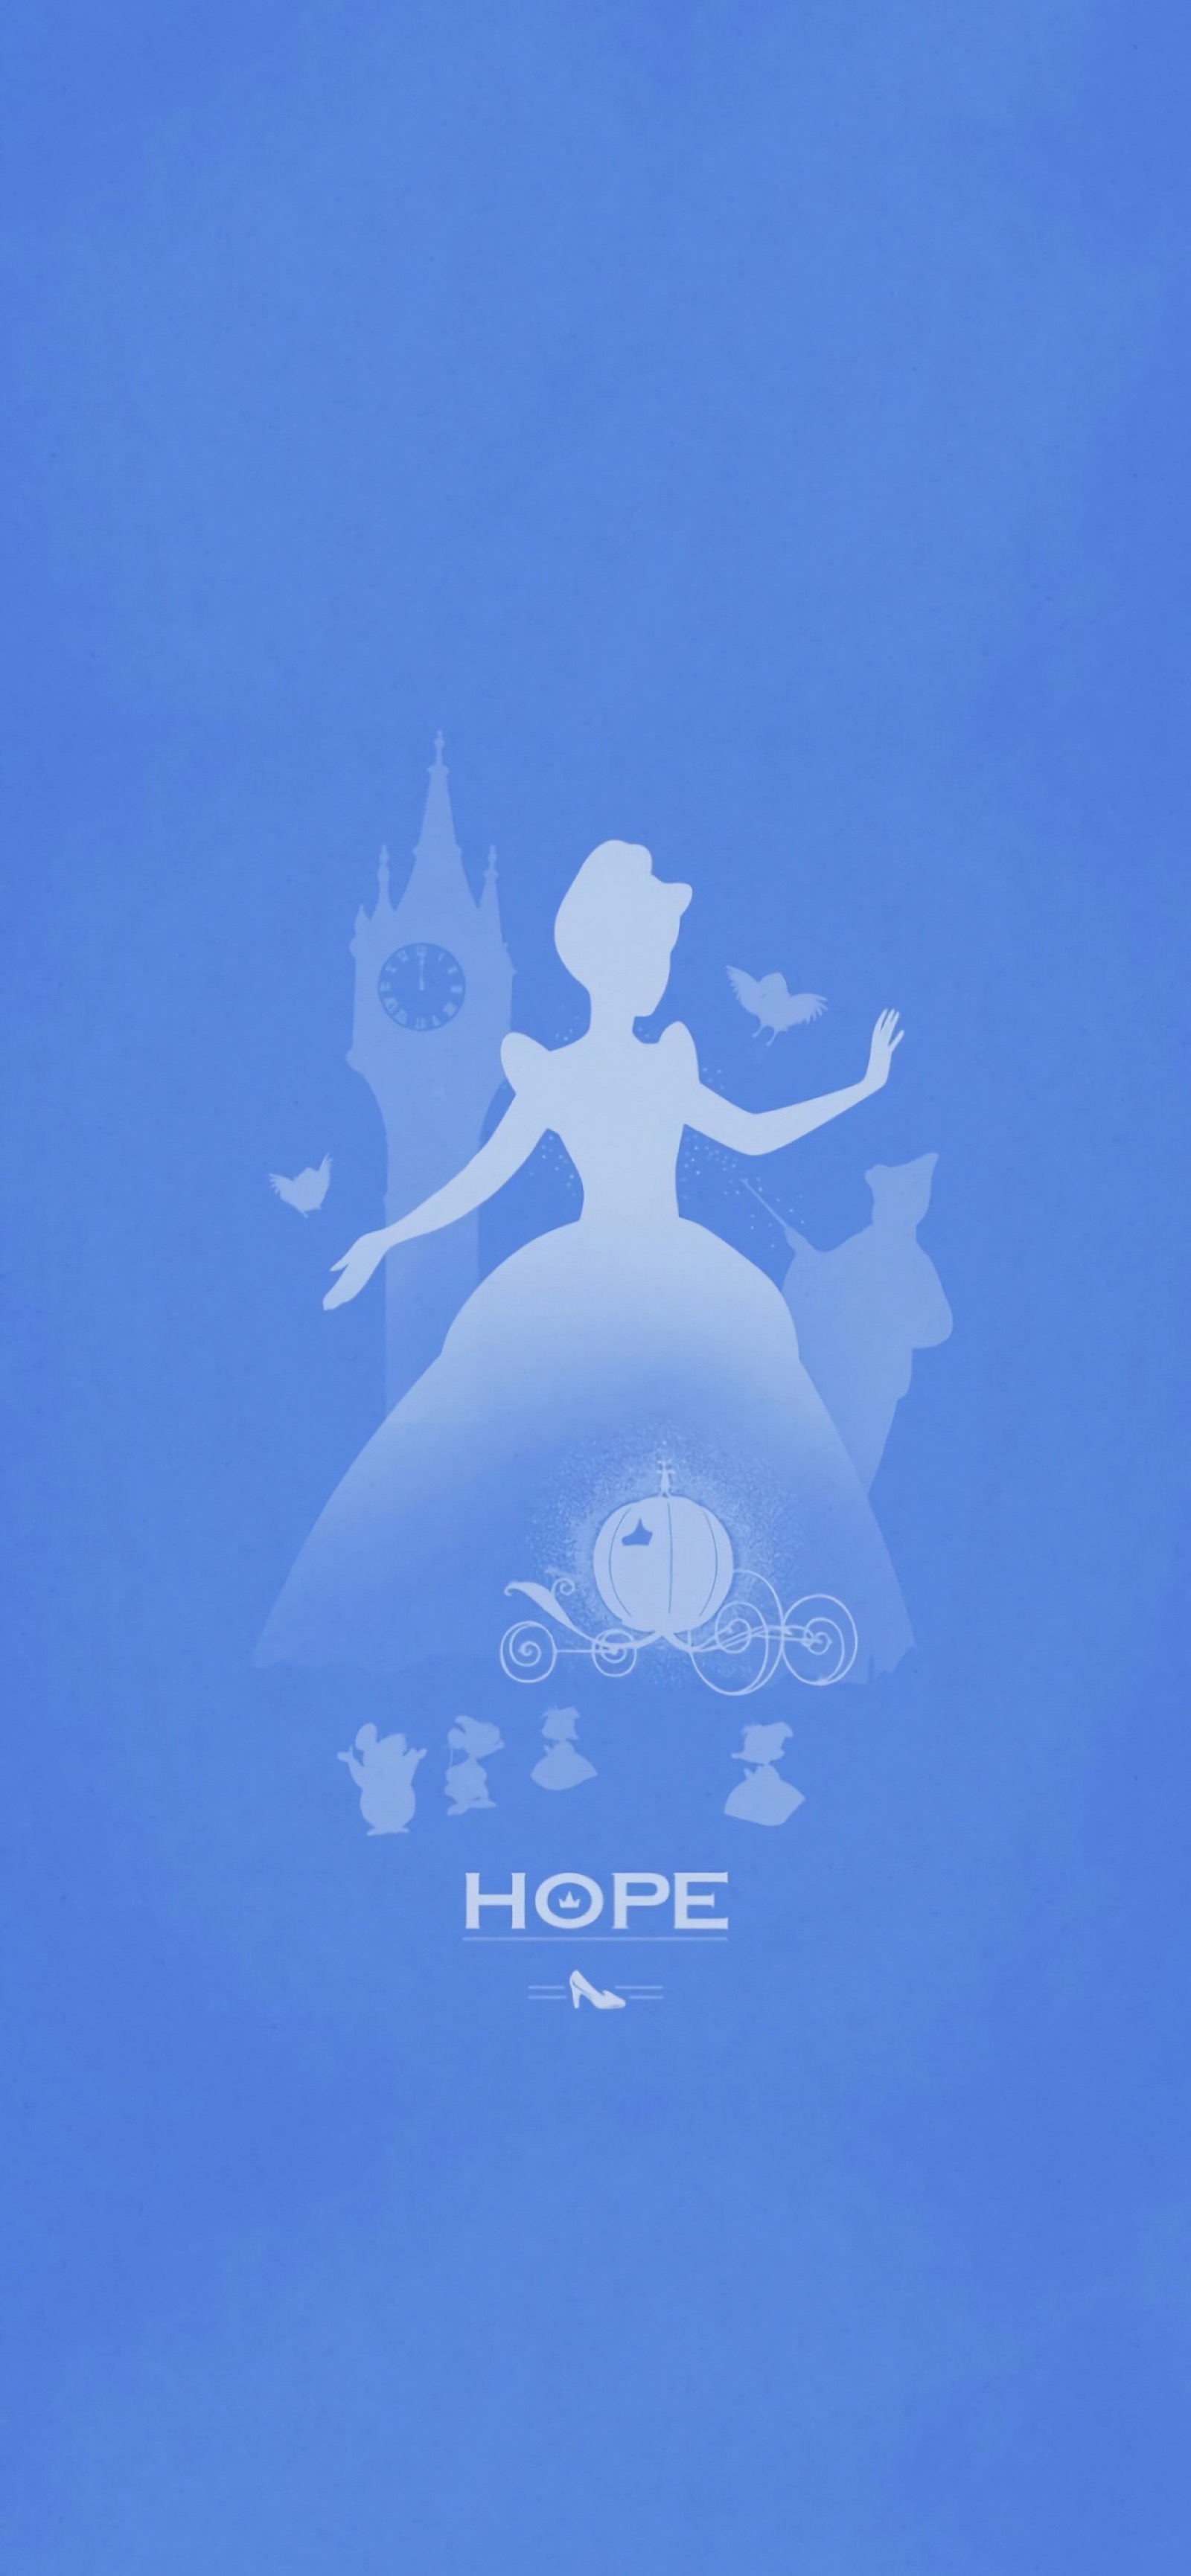 迪士尼公主背景图微信图片